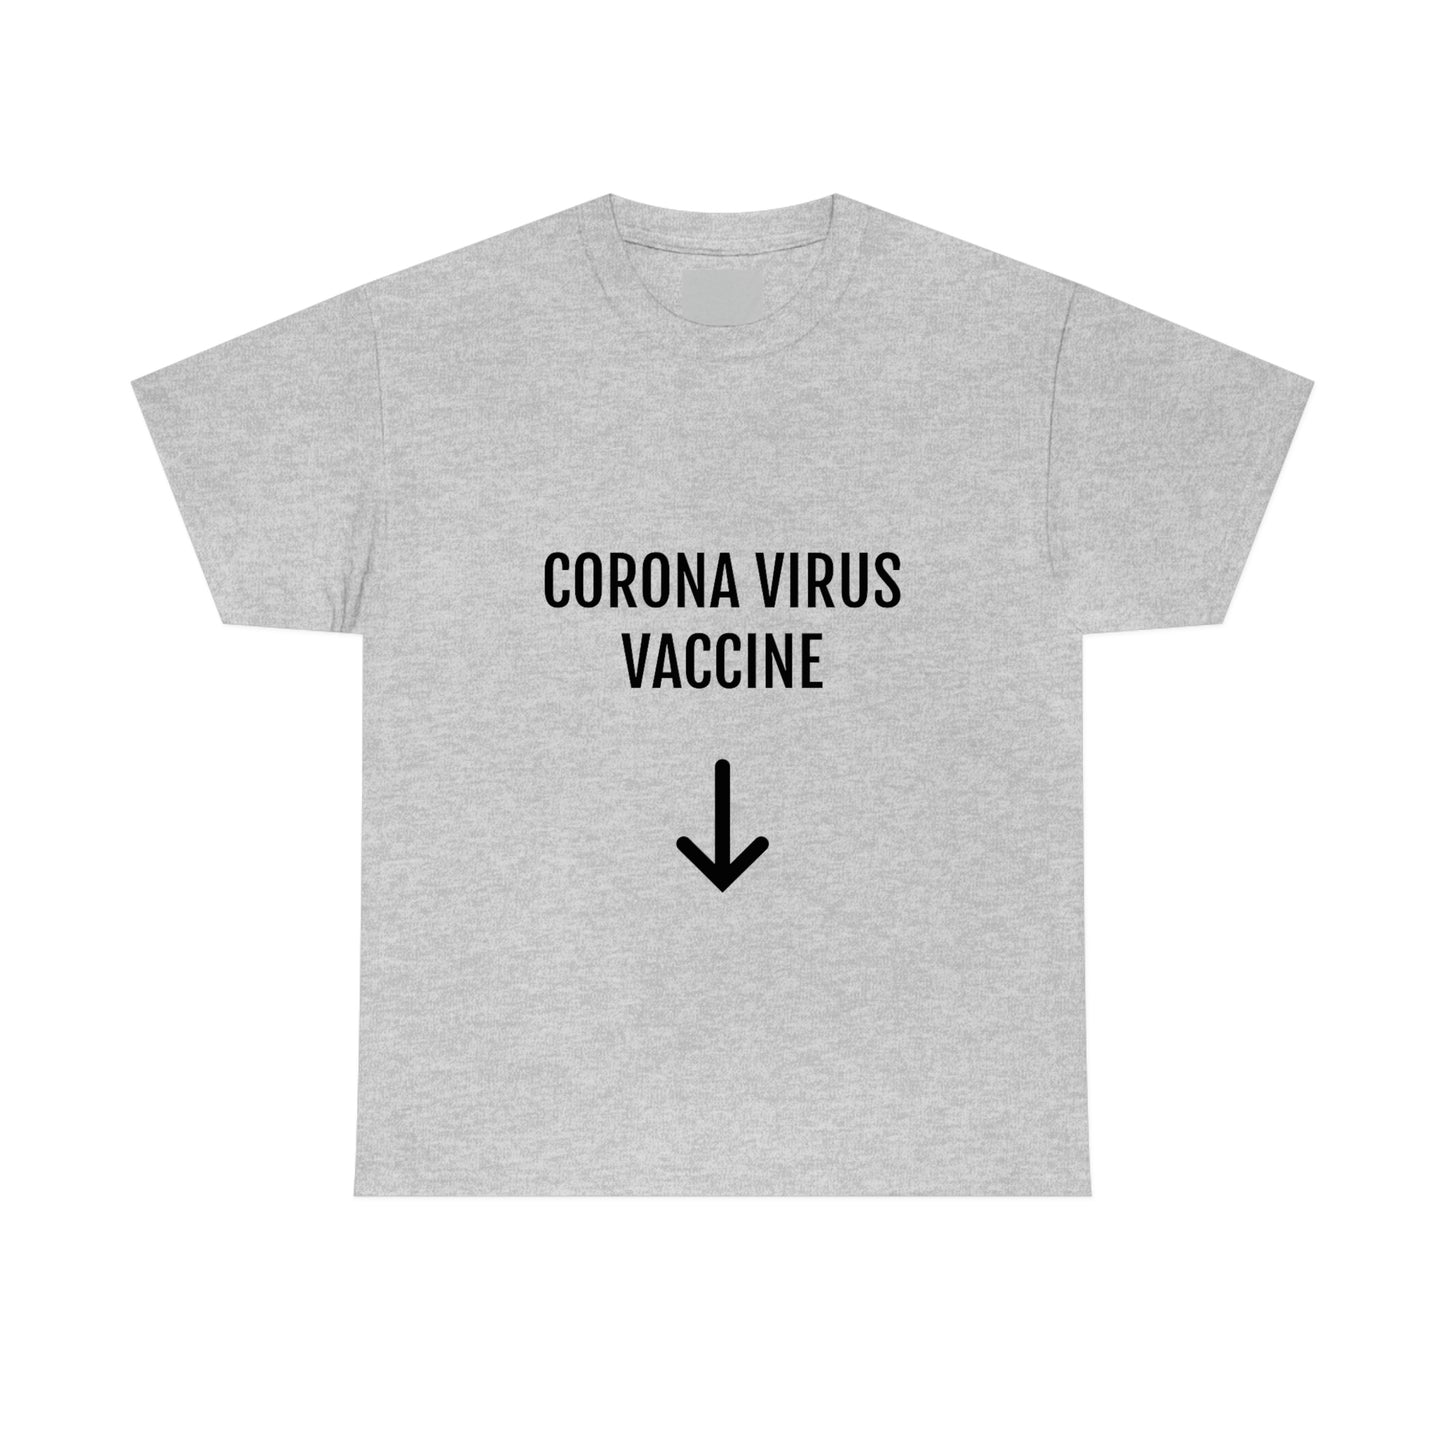 CORONA VIRUS VACCINE T-SHIRT